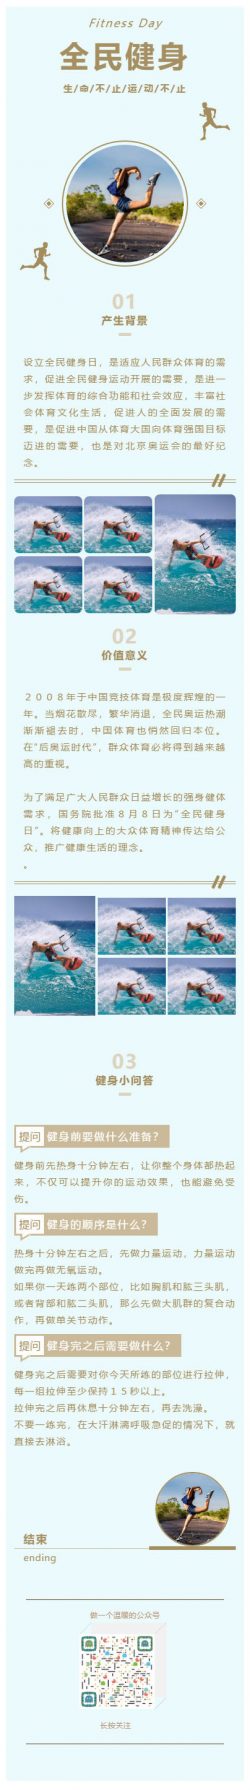 体育运动微信公众号文章模板推送图文素材跑步游泳健身